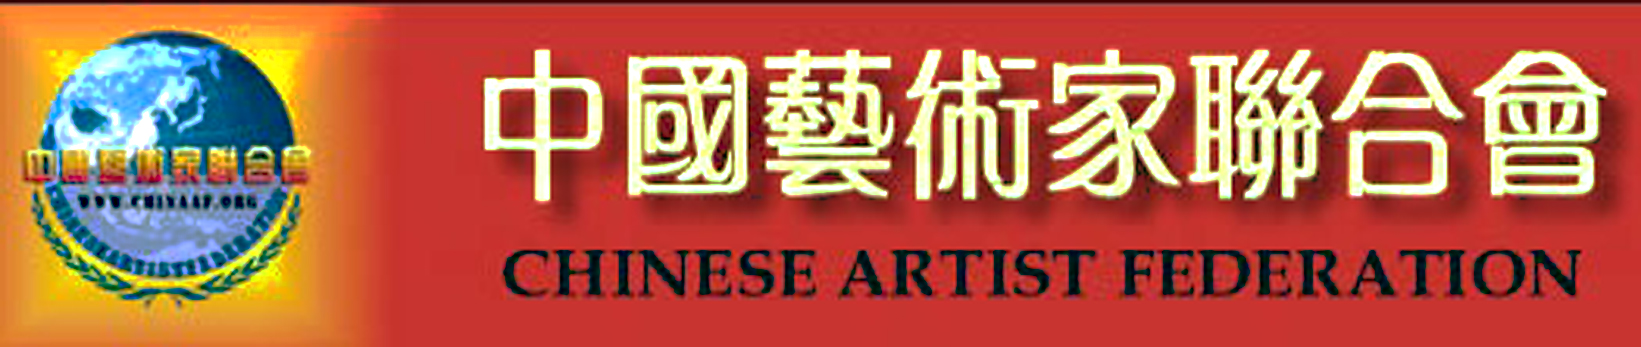 中國藝術家聯合會